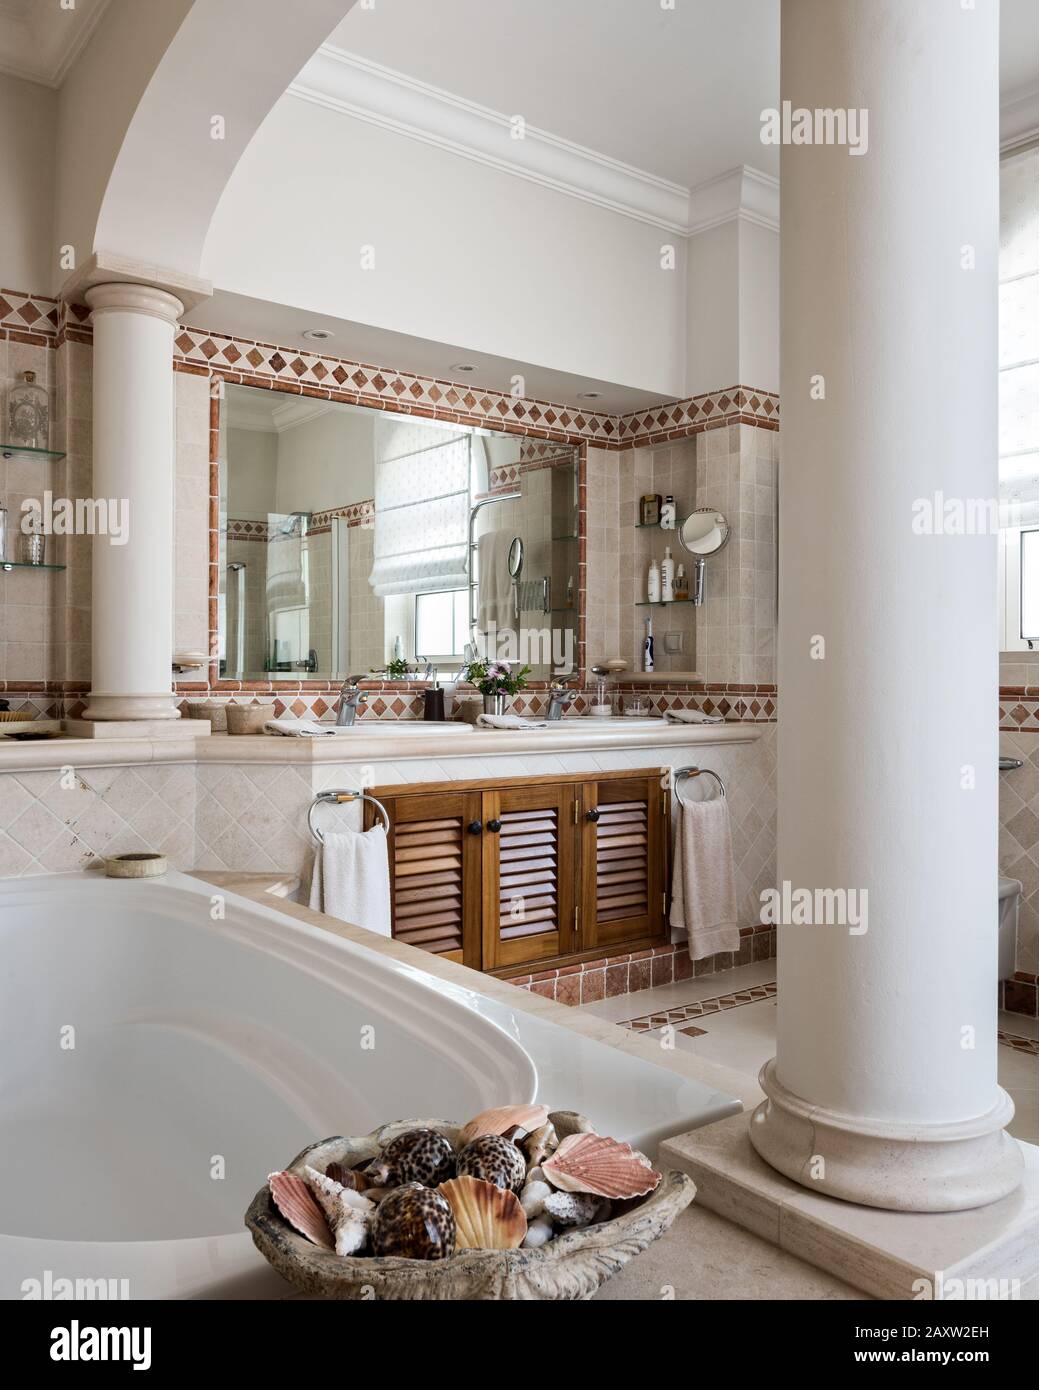 Salle de bains de style classique avec colonnes Banque D'Images